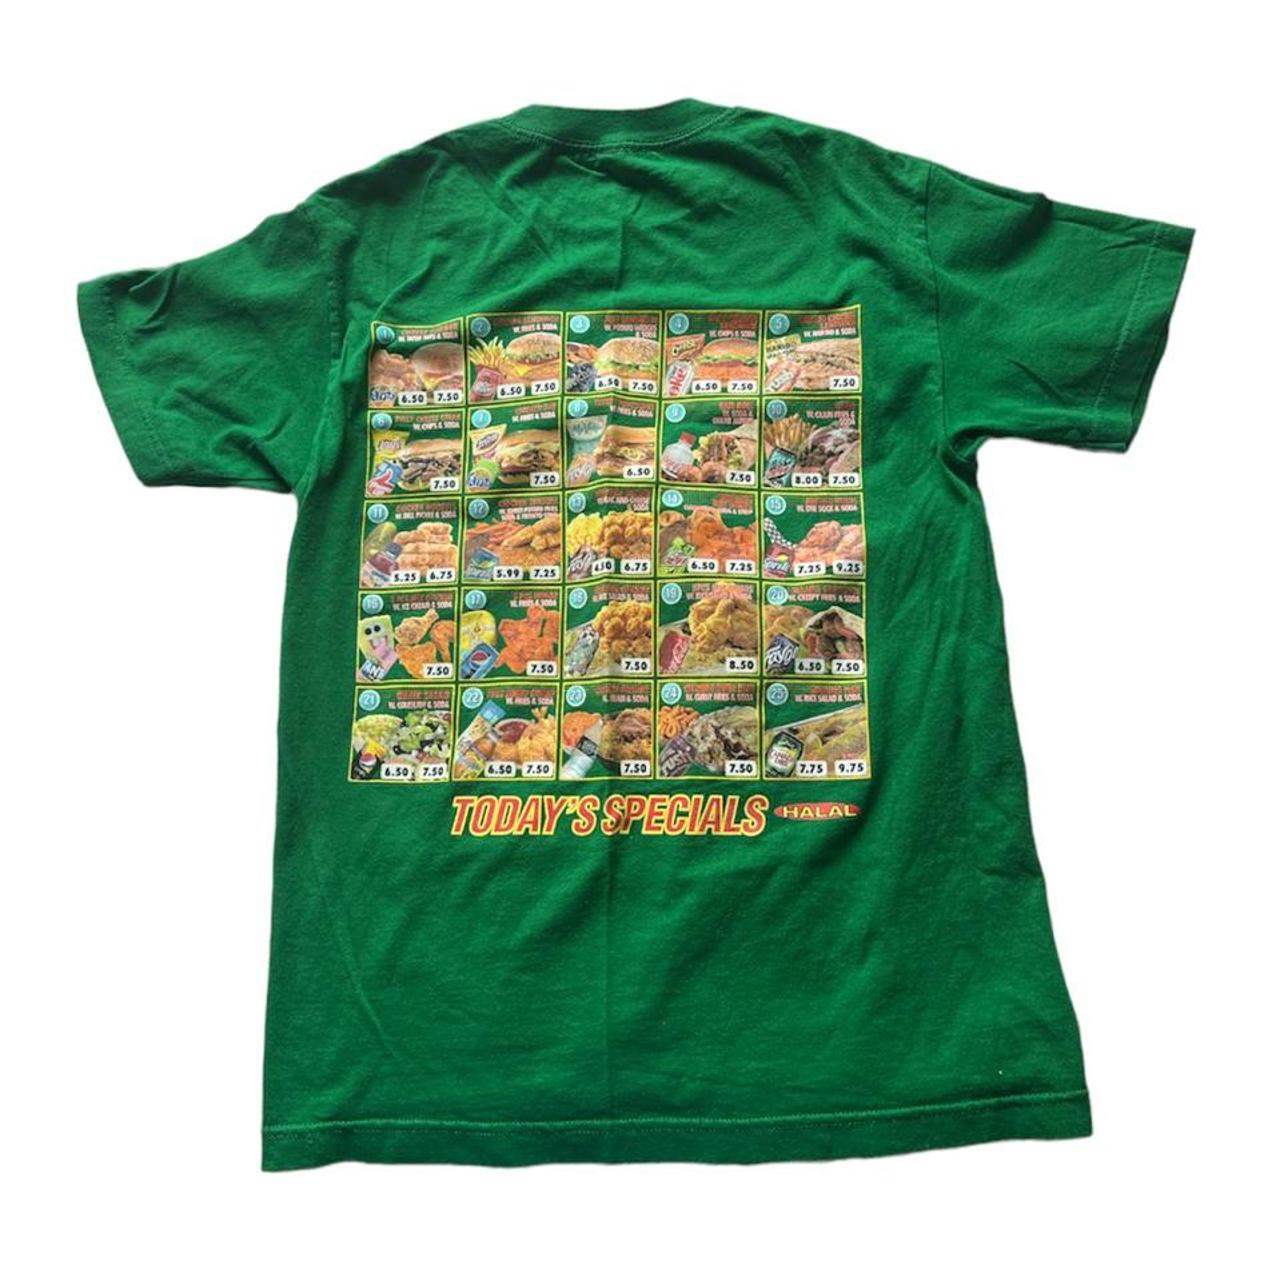 Imran Potato Chicken and Burger Menu Green Shirt